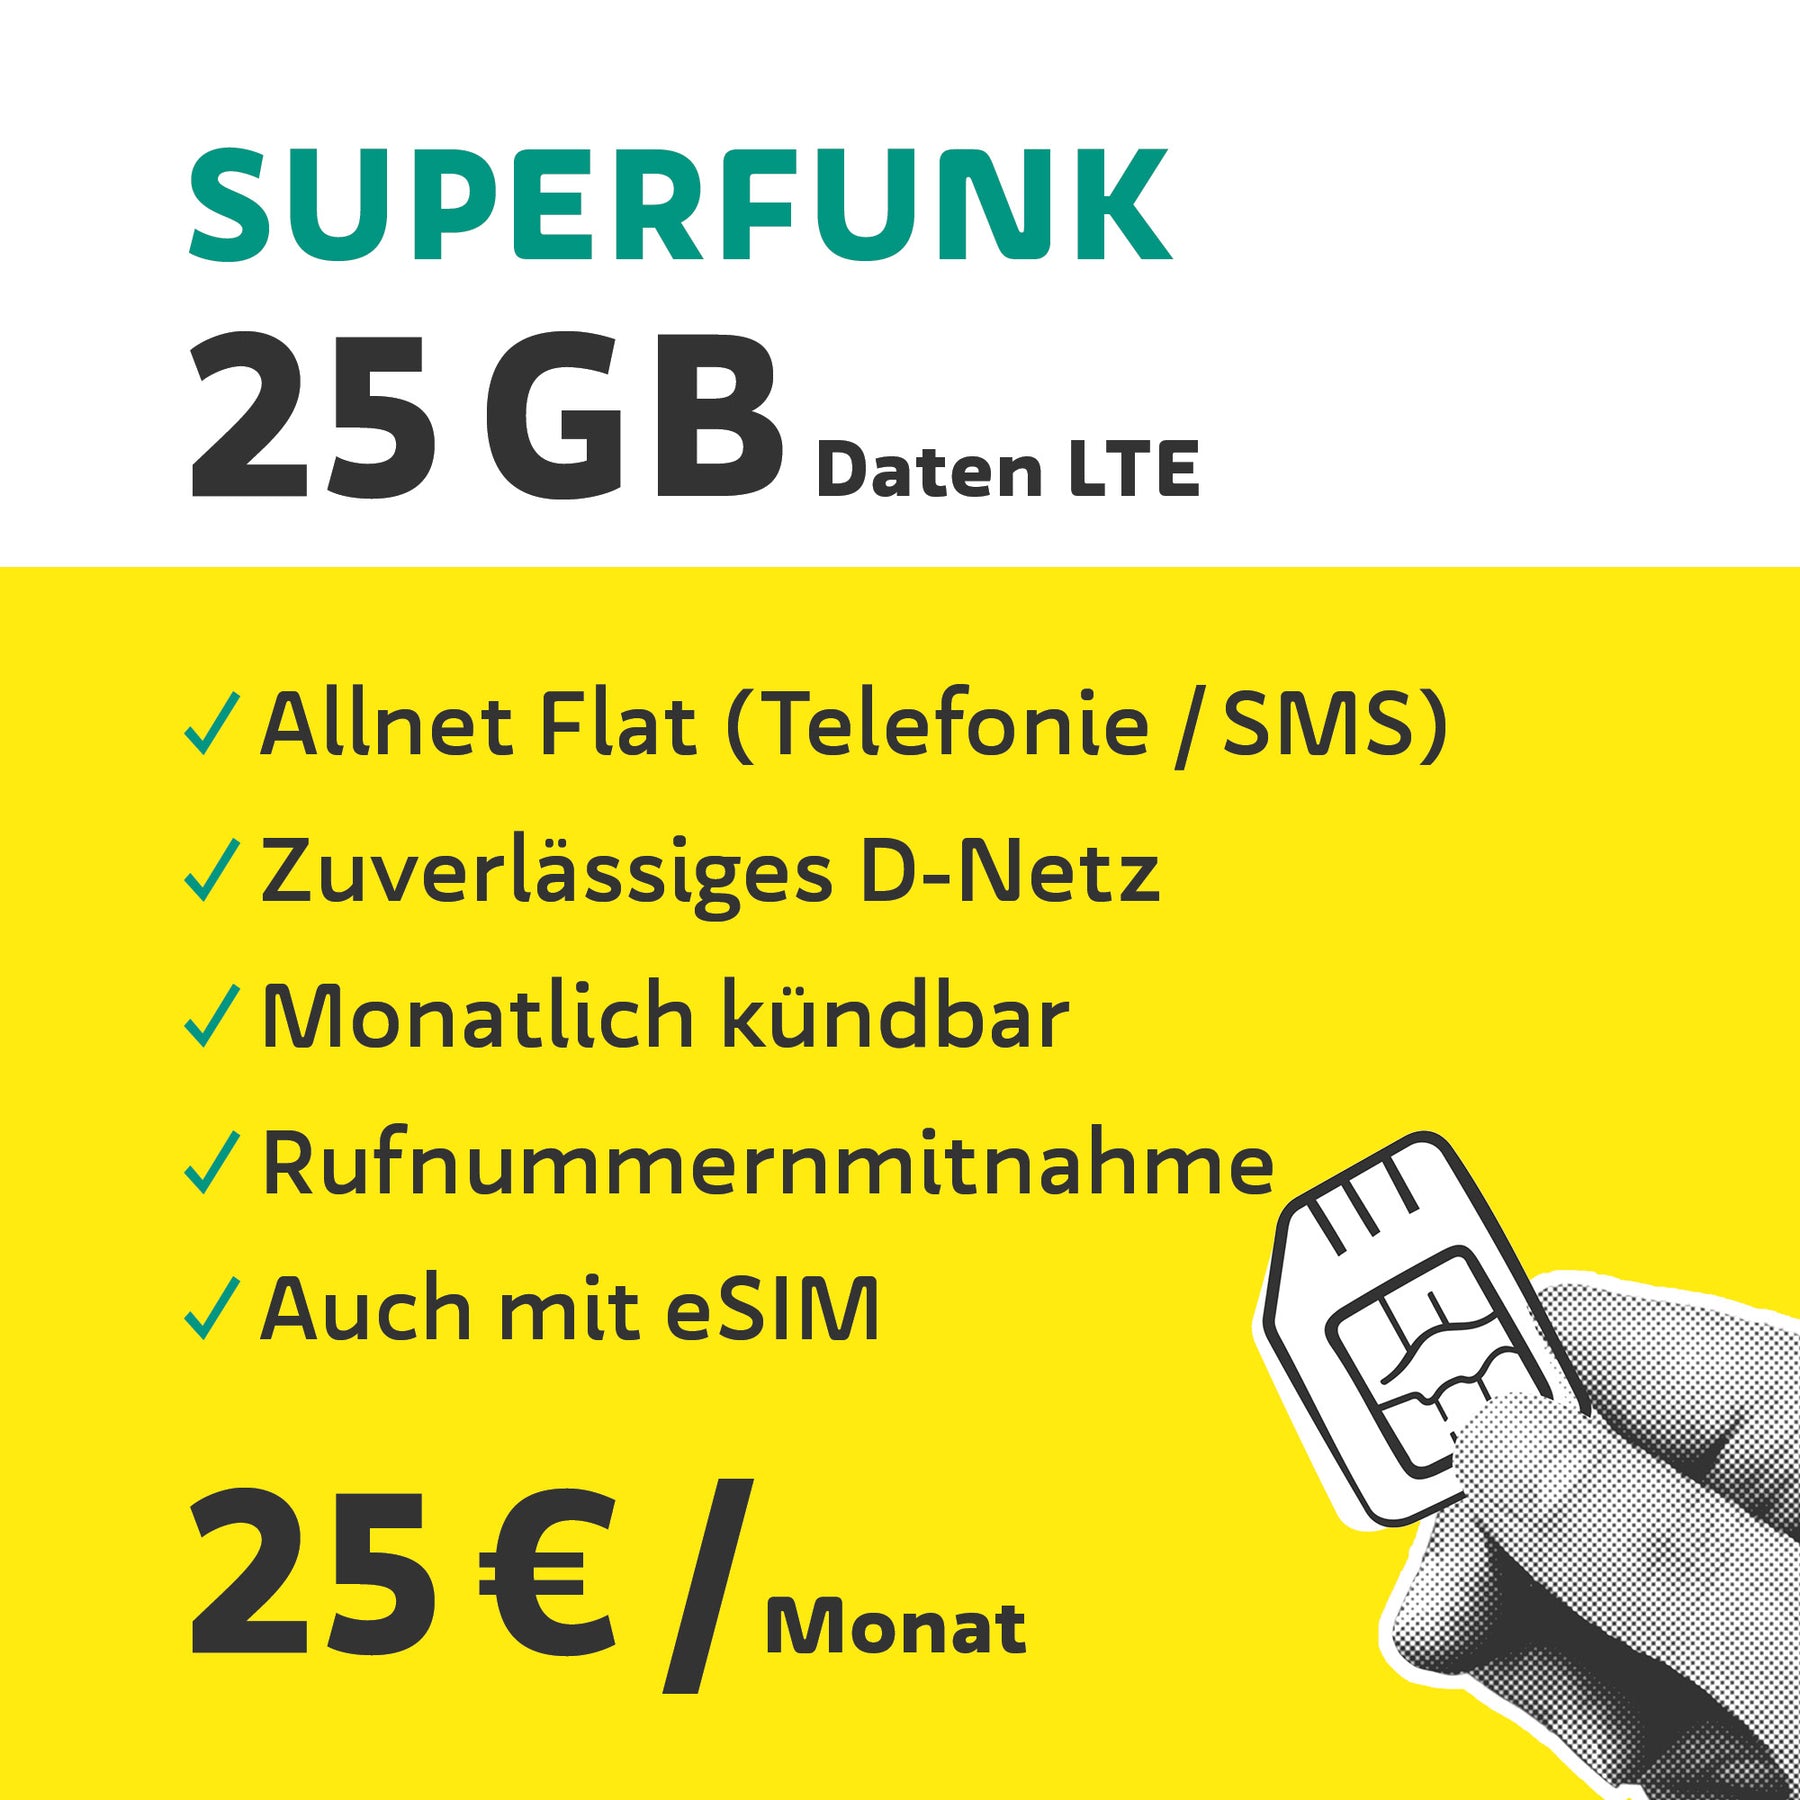 Tarifa de telefonía móvil sostenible - "Superfunk" | 25GB